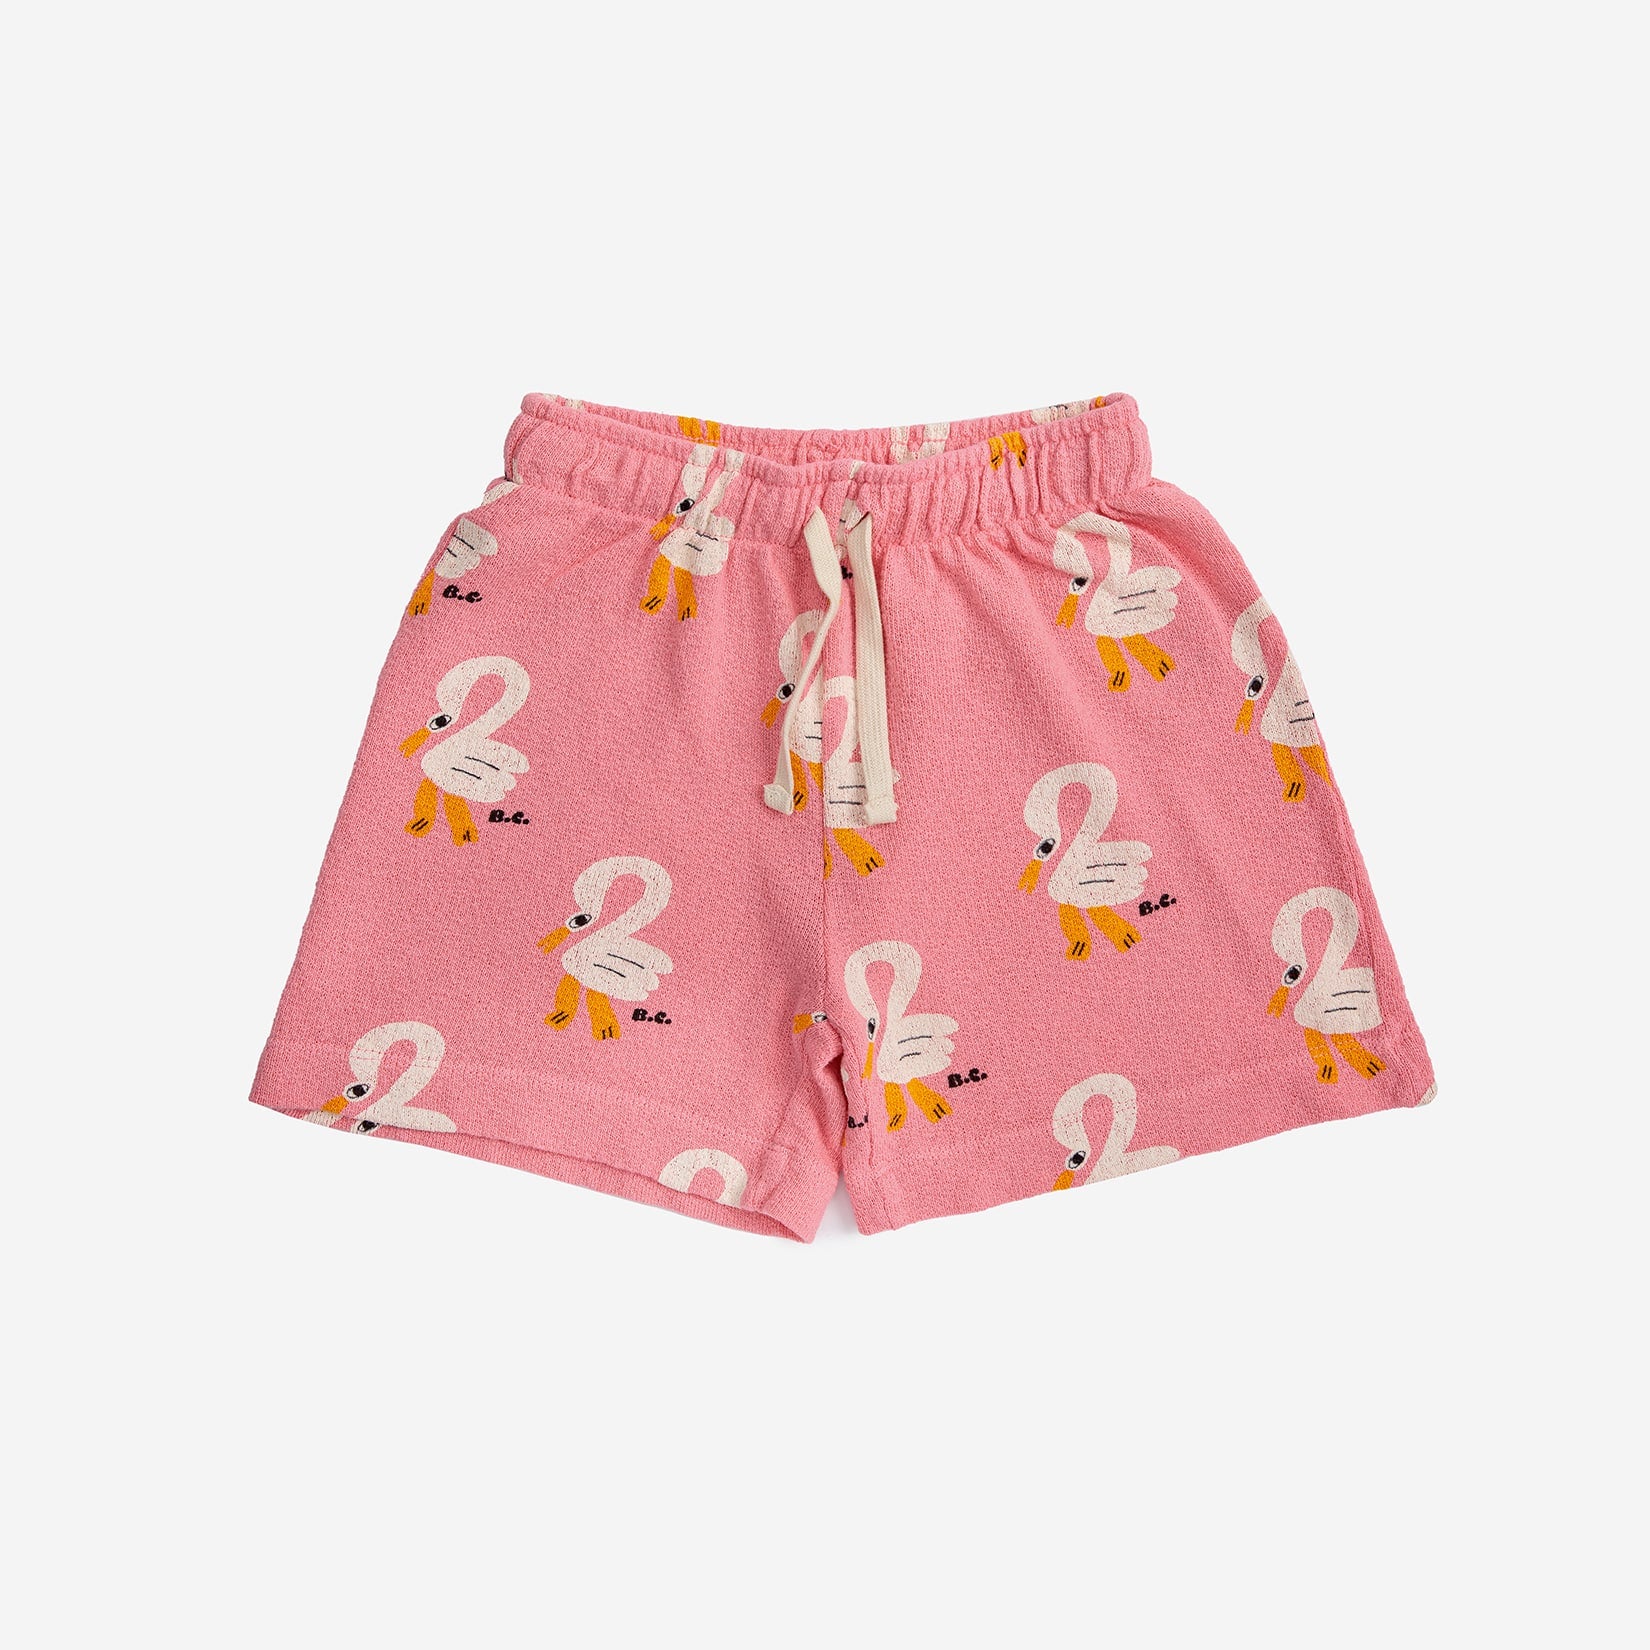 Girls Pink Printed Cotton Shorts